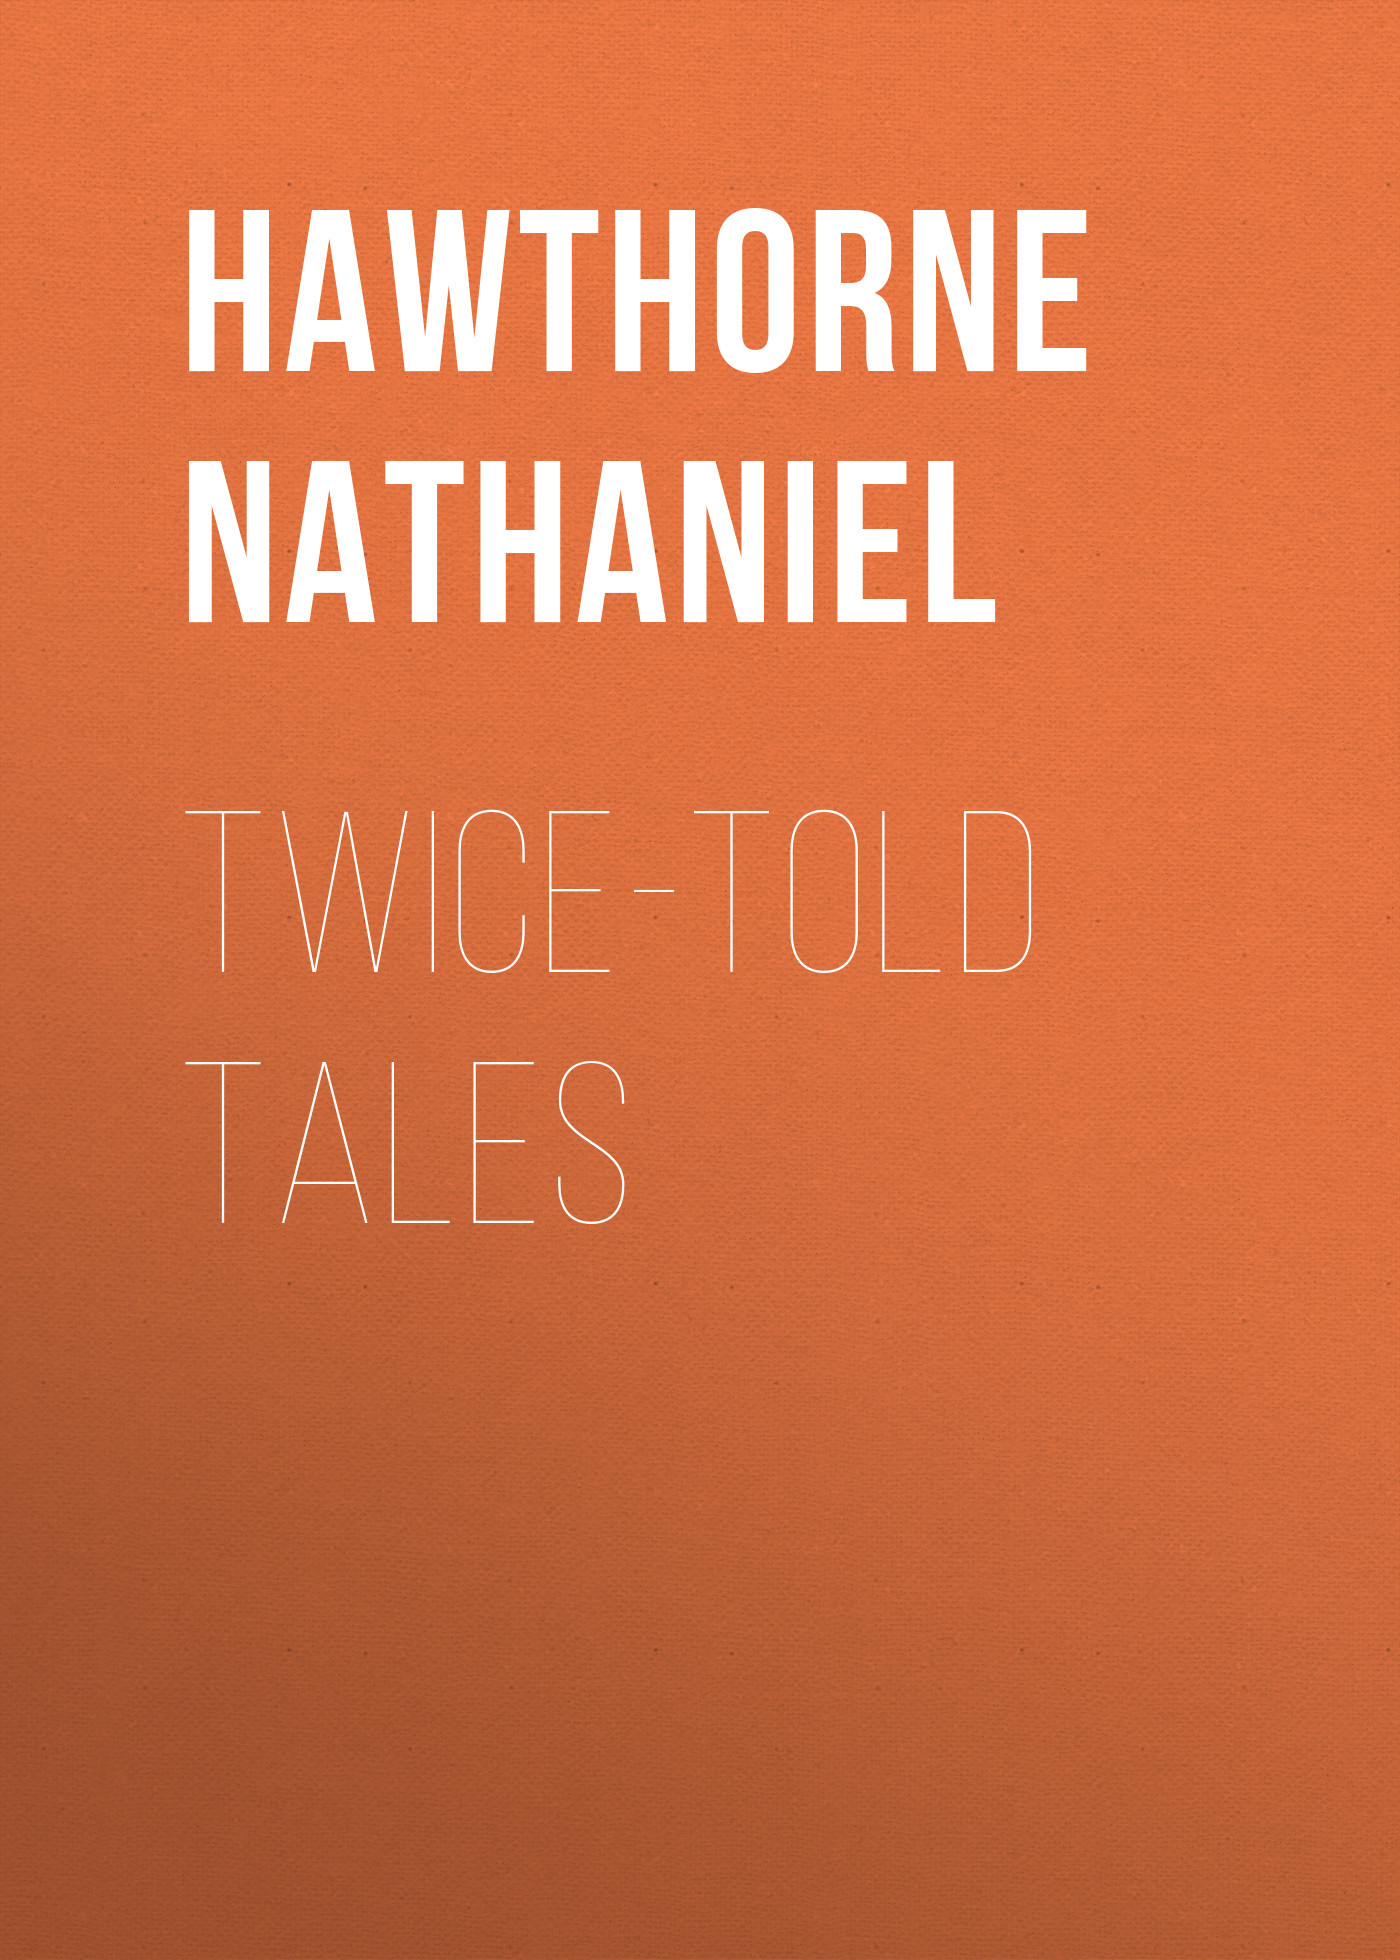 Книга Twice-Told Tales из серии , созданная Nathaniel Hawthorne, может относится к жанру Литература 19 века, Зарубежная старинная литература, Зарубежная классика. Стоимость электронной книги Twice-Told Tales с идентификатором 25560300 составляет 0 руб.